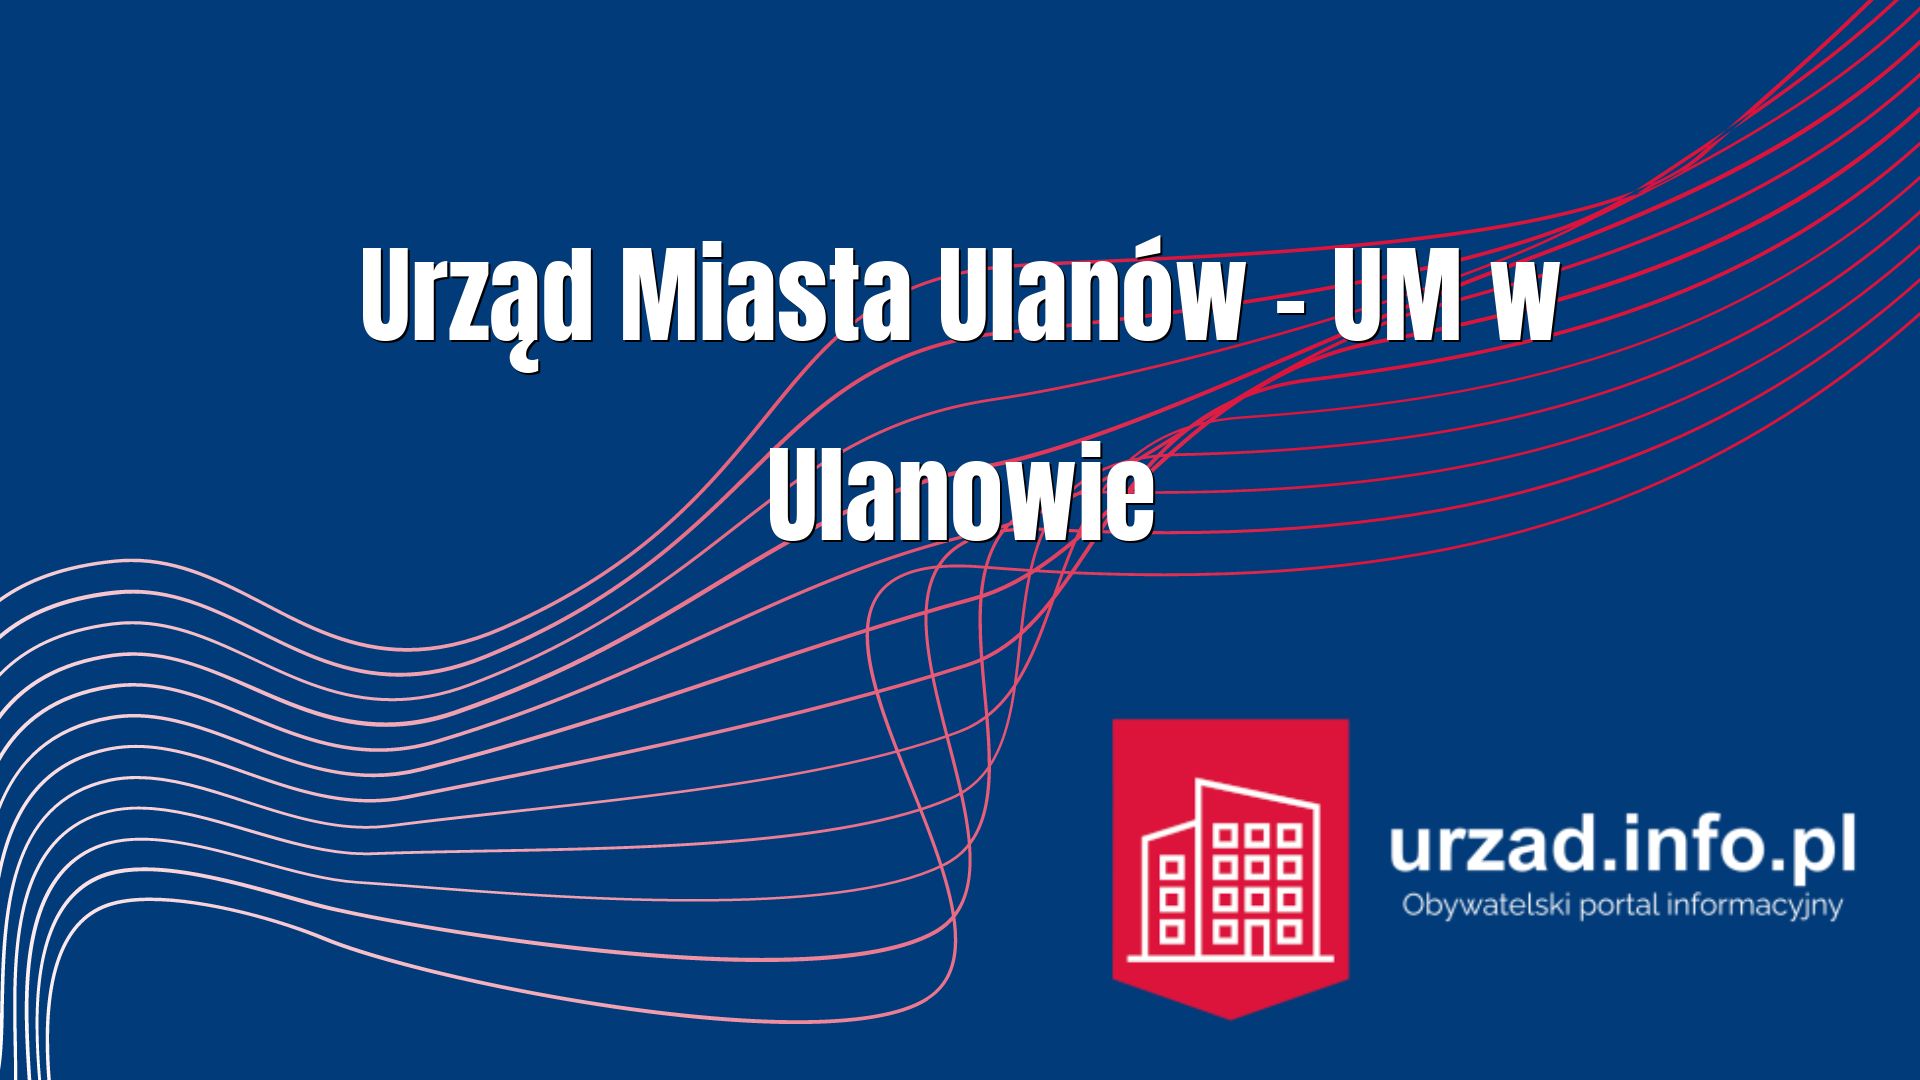 Urząd Miasta Ulanów – UM w Ulanowie